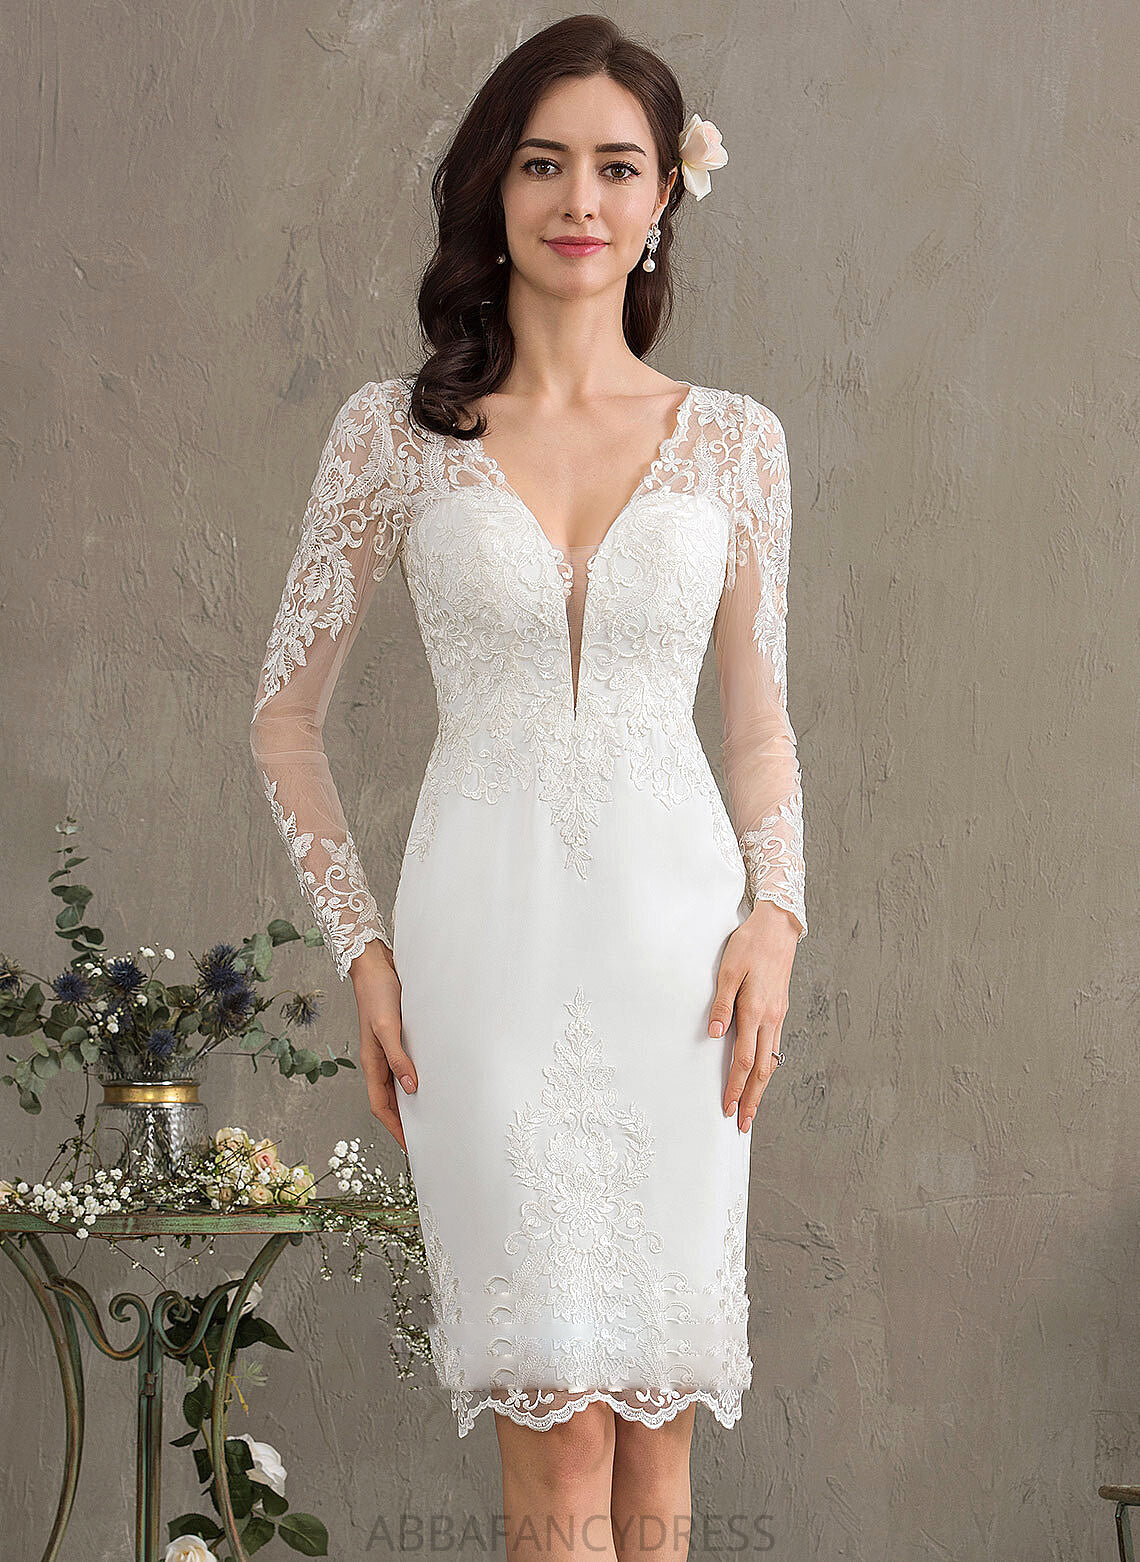 Crepe Stretch Wedding Sheath/Column Dress V-neck Wedding Dresses Marlie Knee-Length